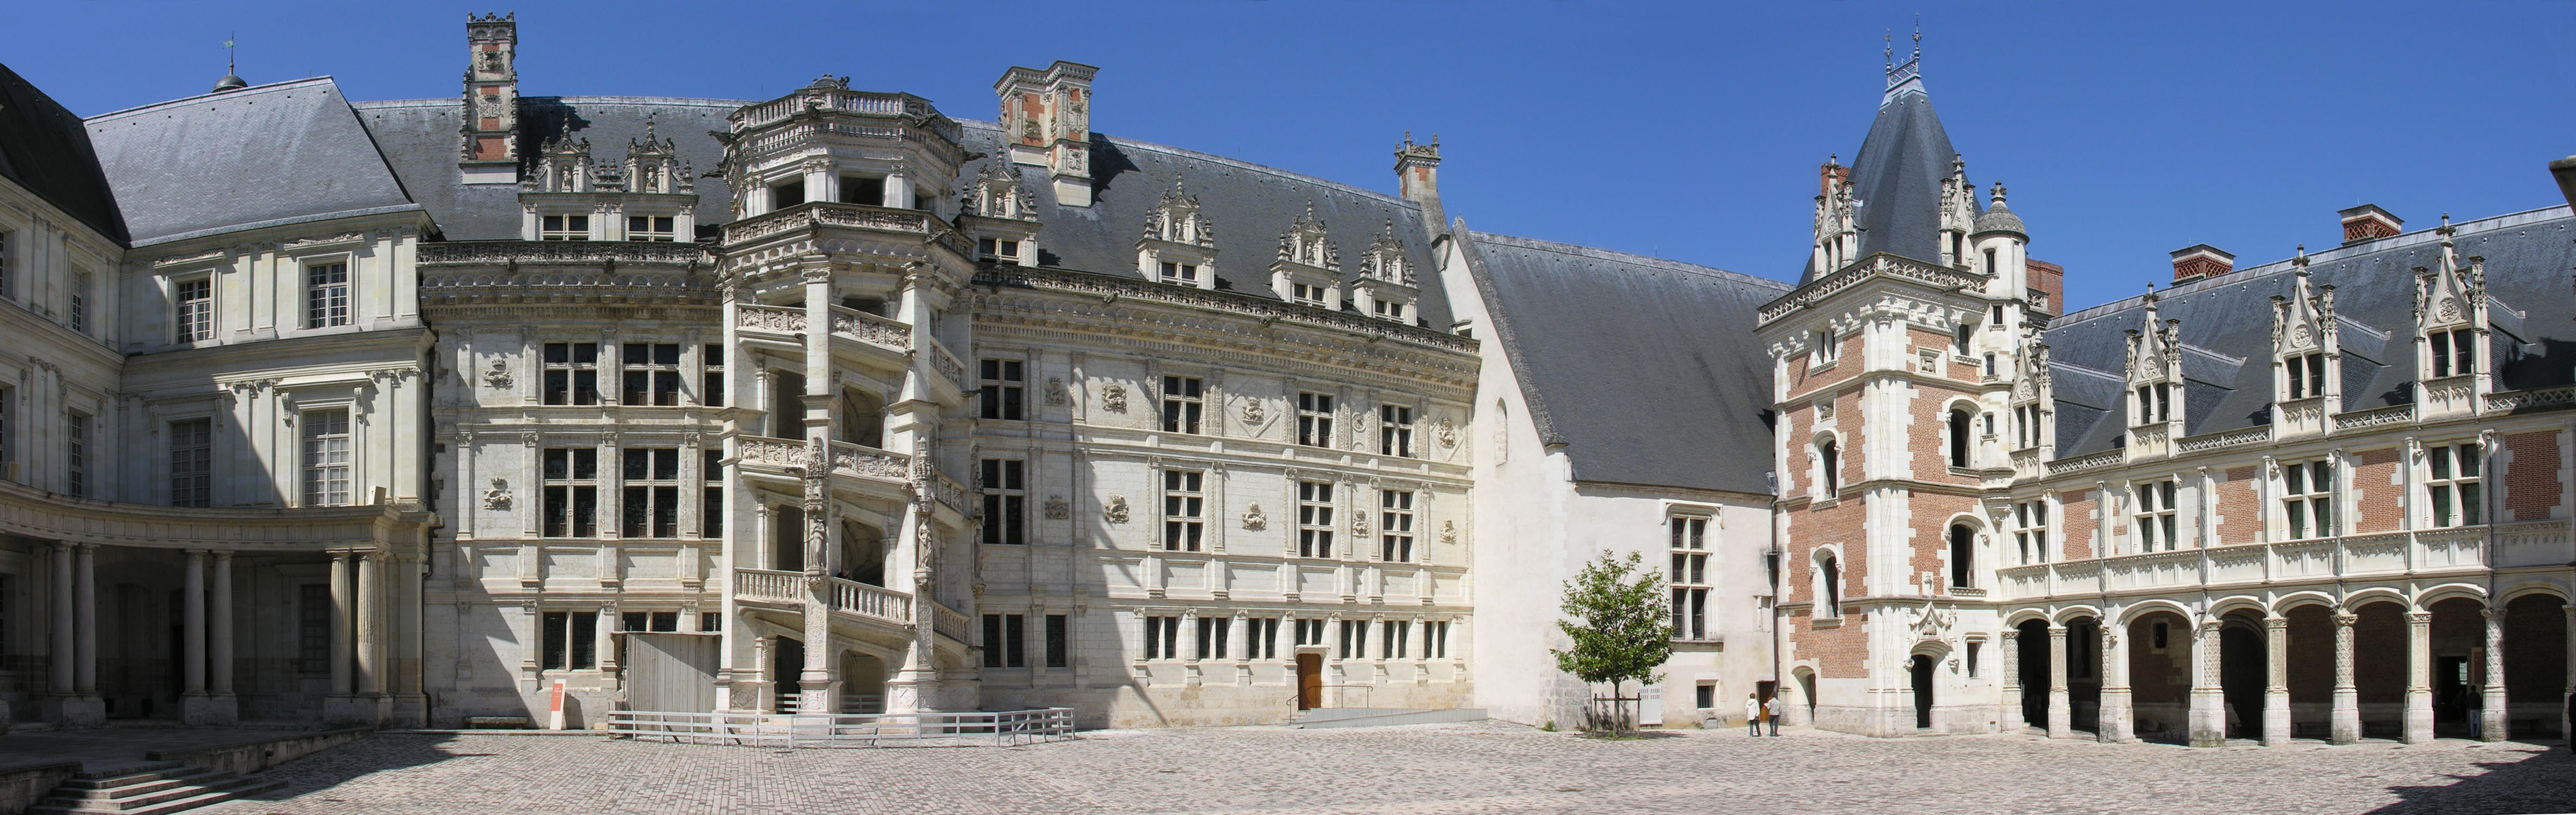 Castle of Blois - France2.jpg